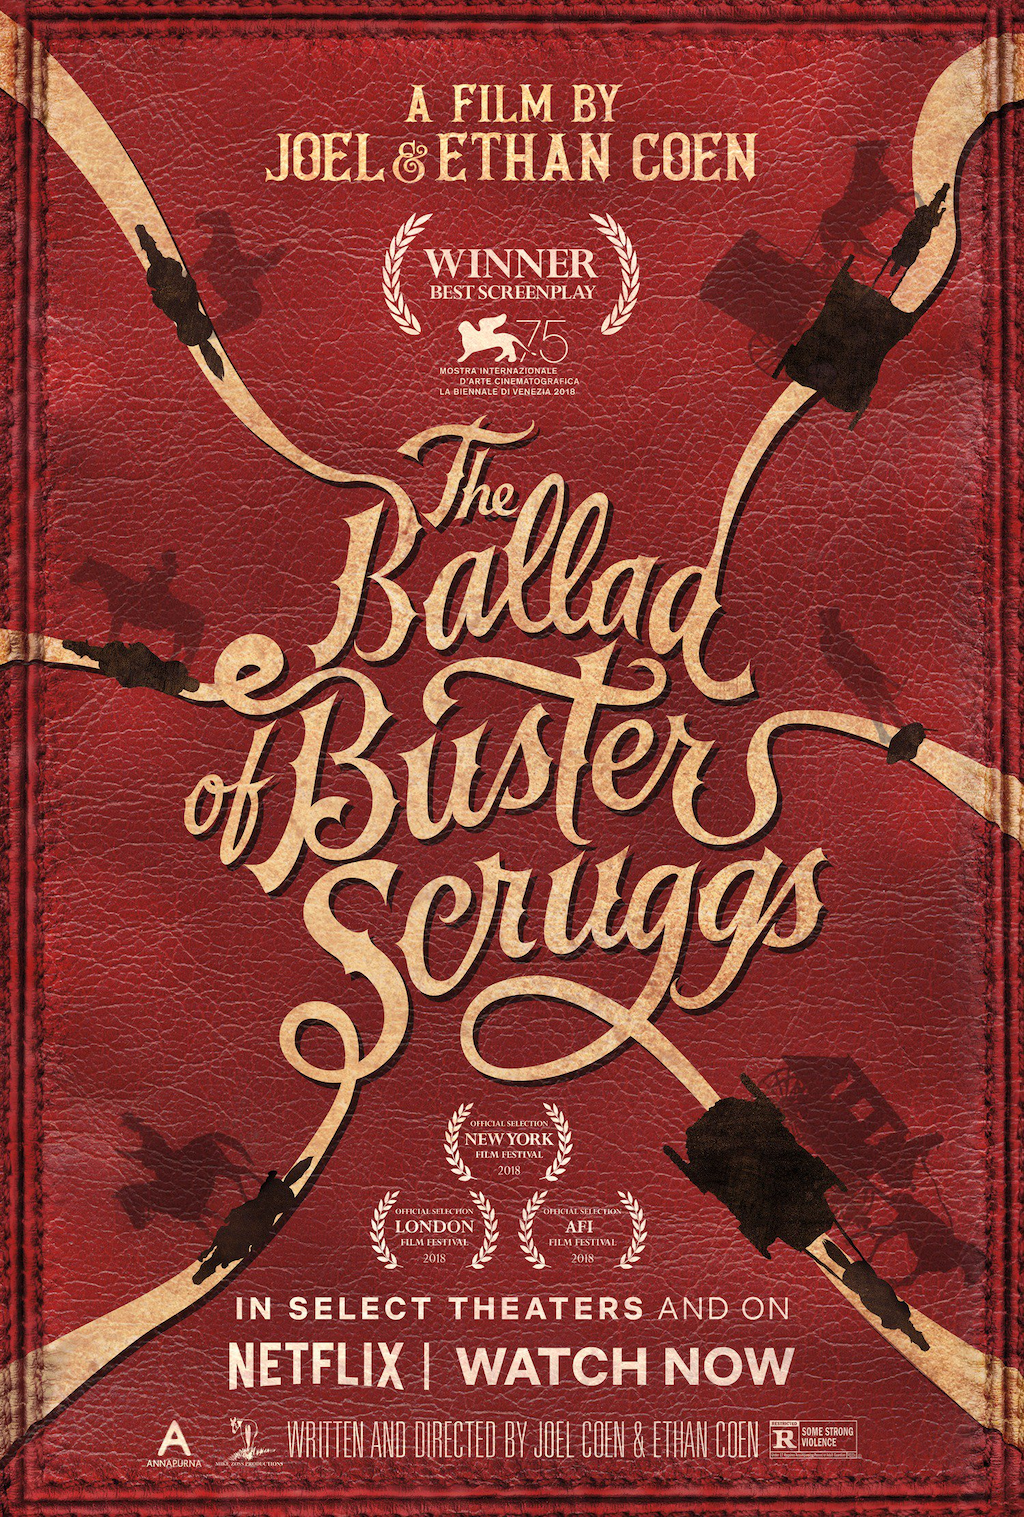  海报：巴斯特·斯克鲁格斯的歌谣 ，导演: 伊桑·科恩 / 乔尔·科恩。 